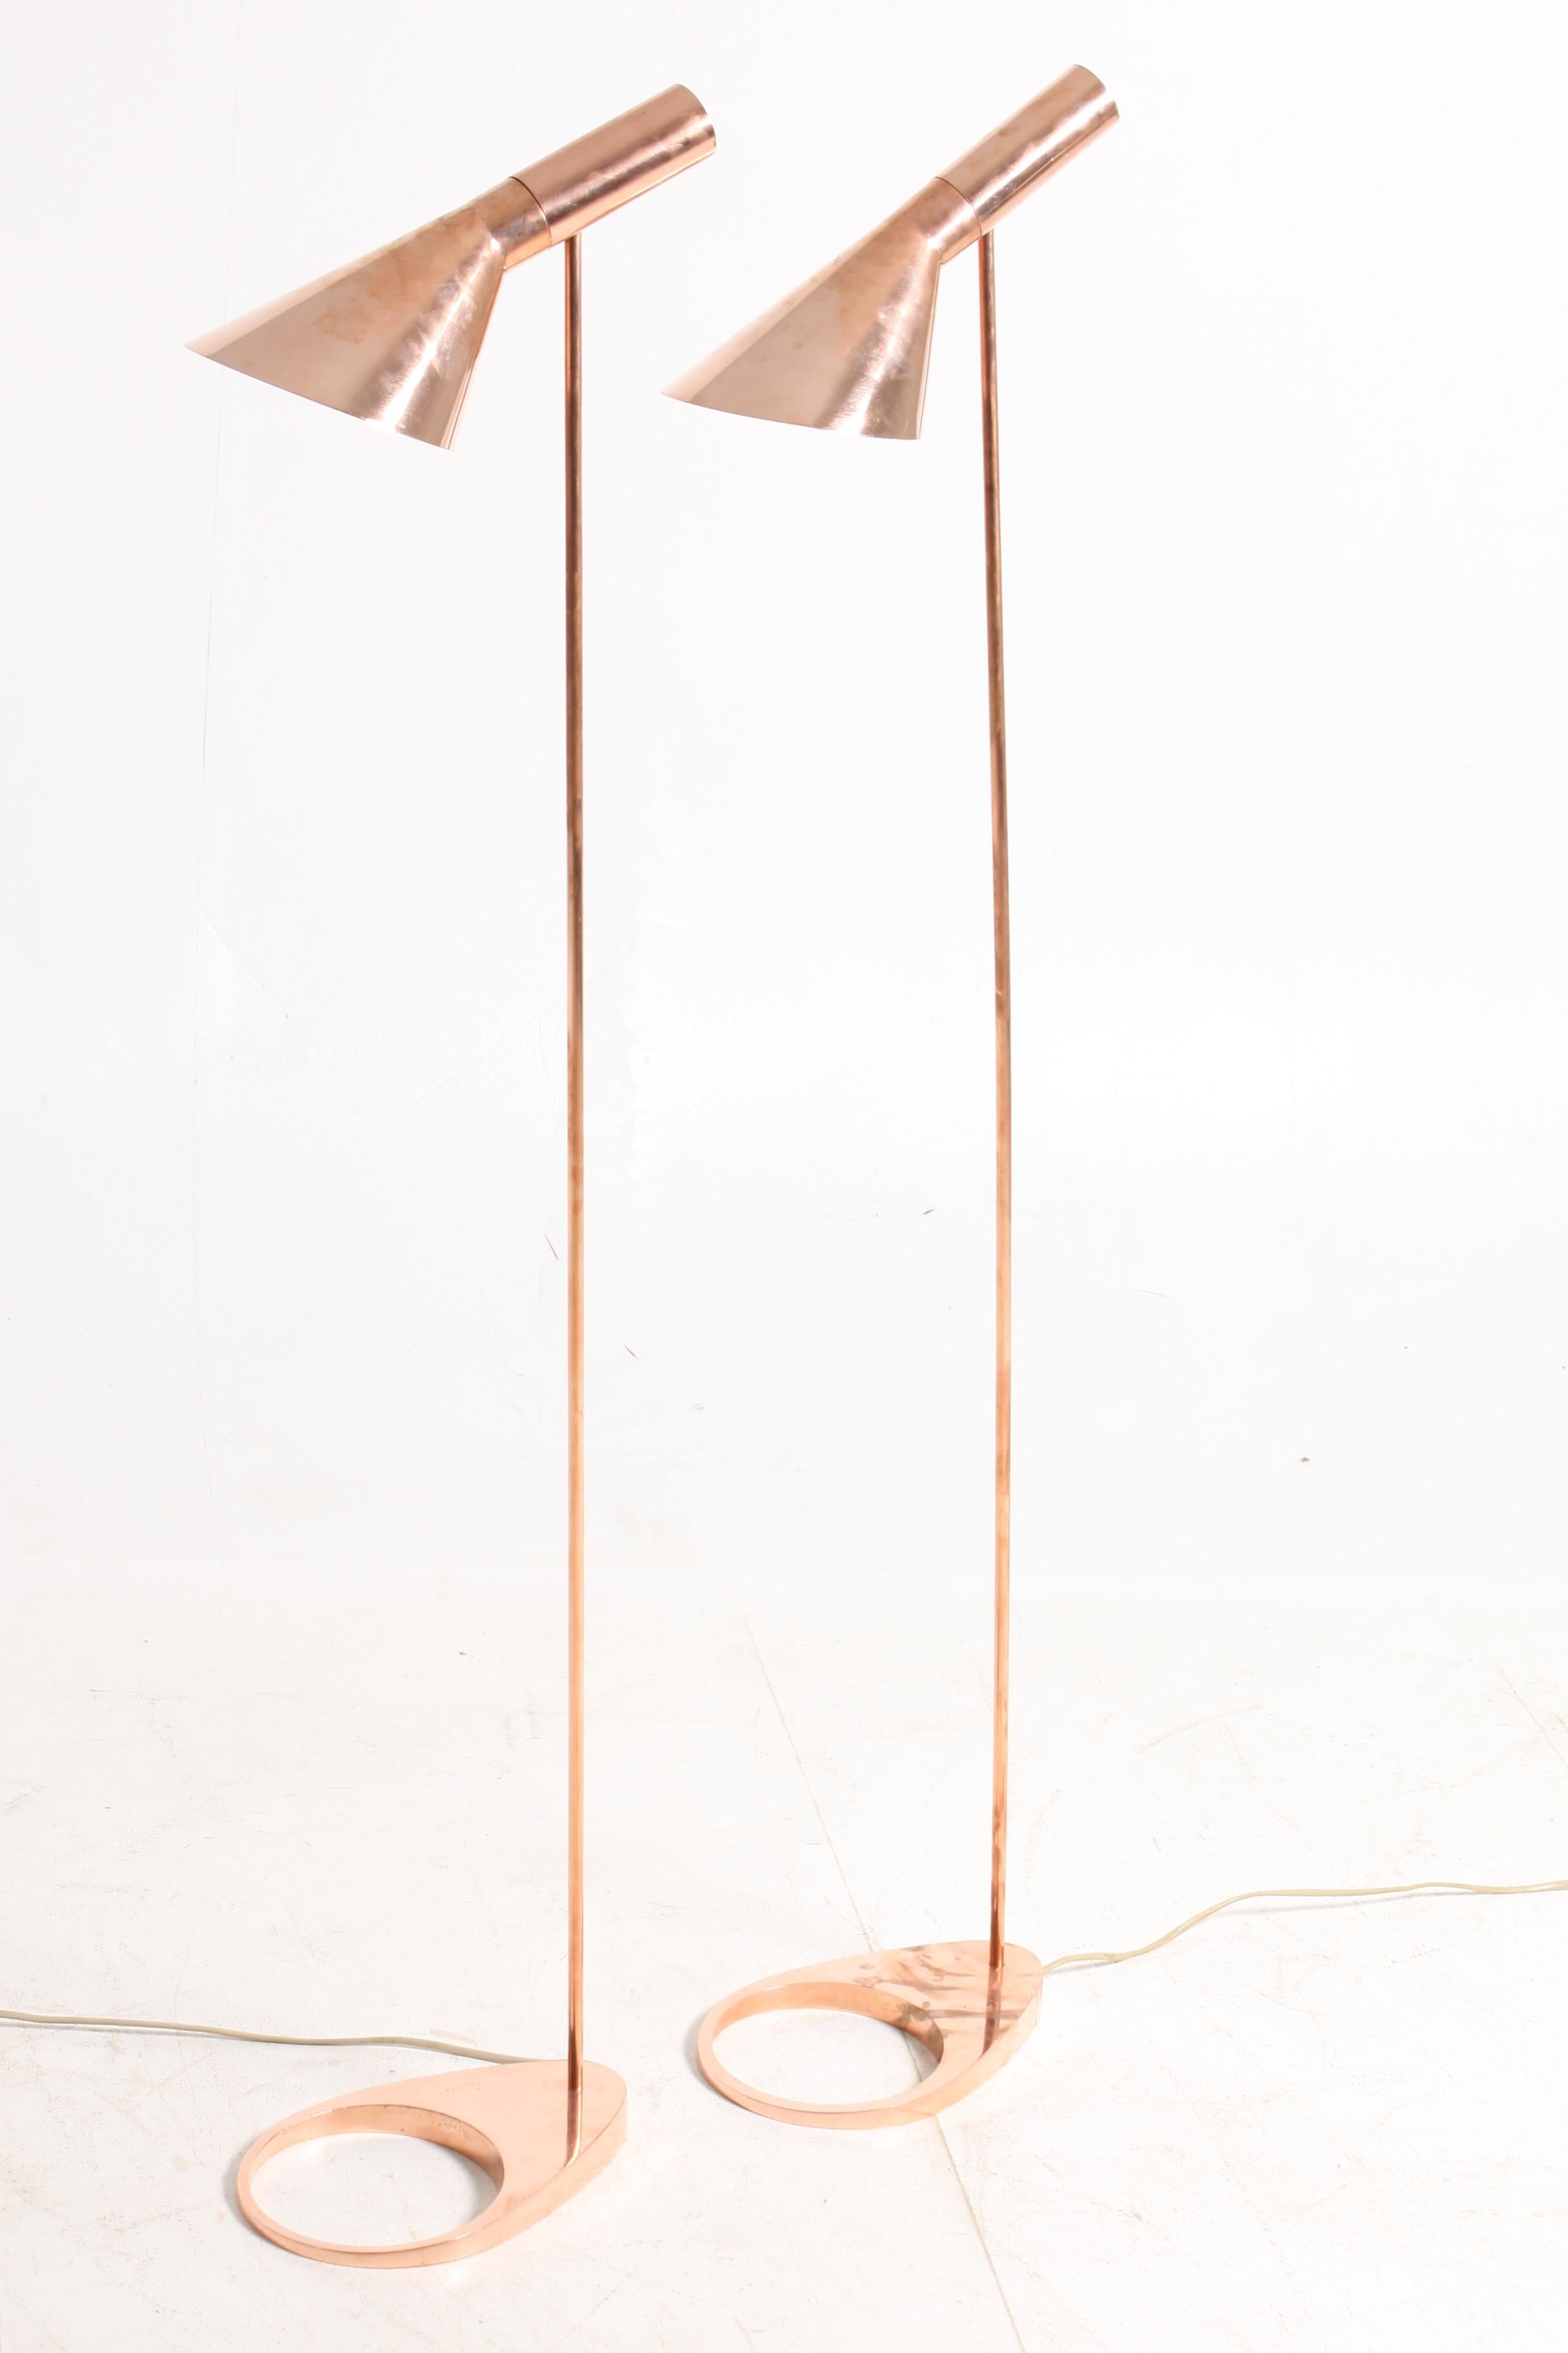 Danish Pair of Floor Lamps in Copper by Arne Jacobsen, Scandinavian Modern, 1960s